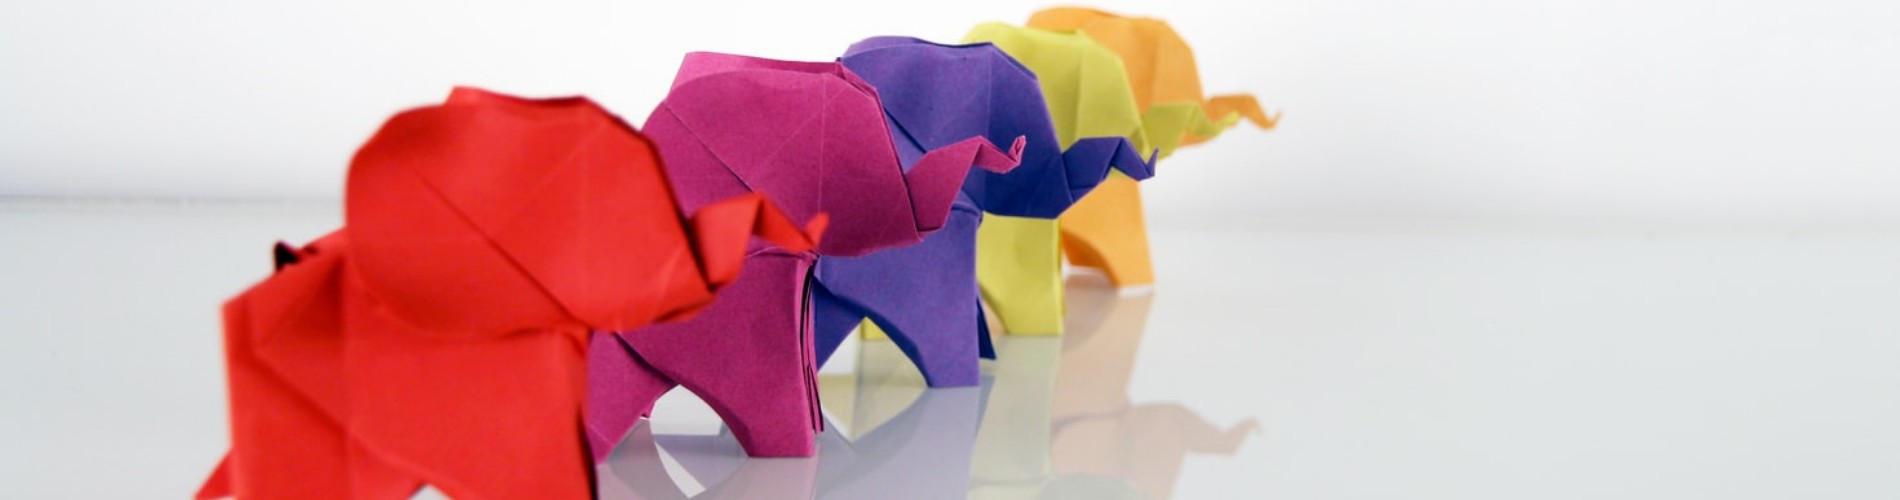 lunar new year origami  1900x500 new.jpg